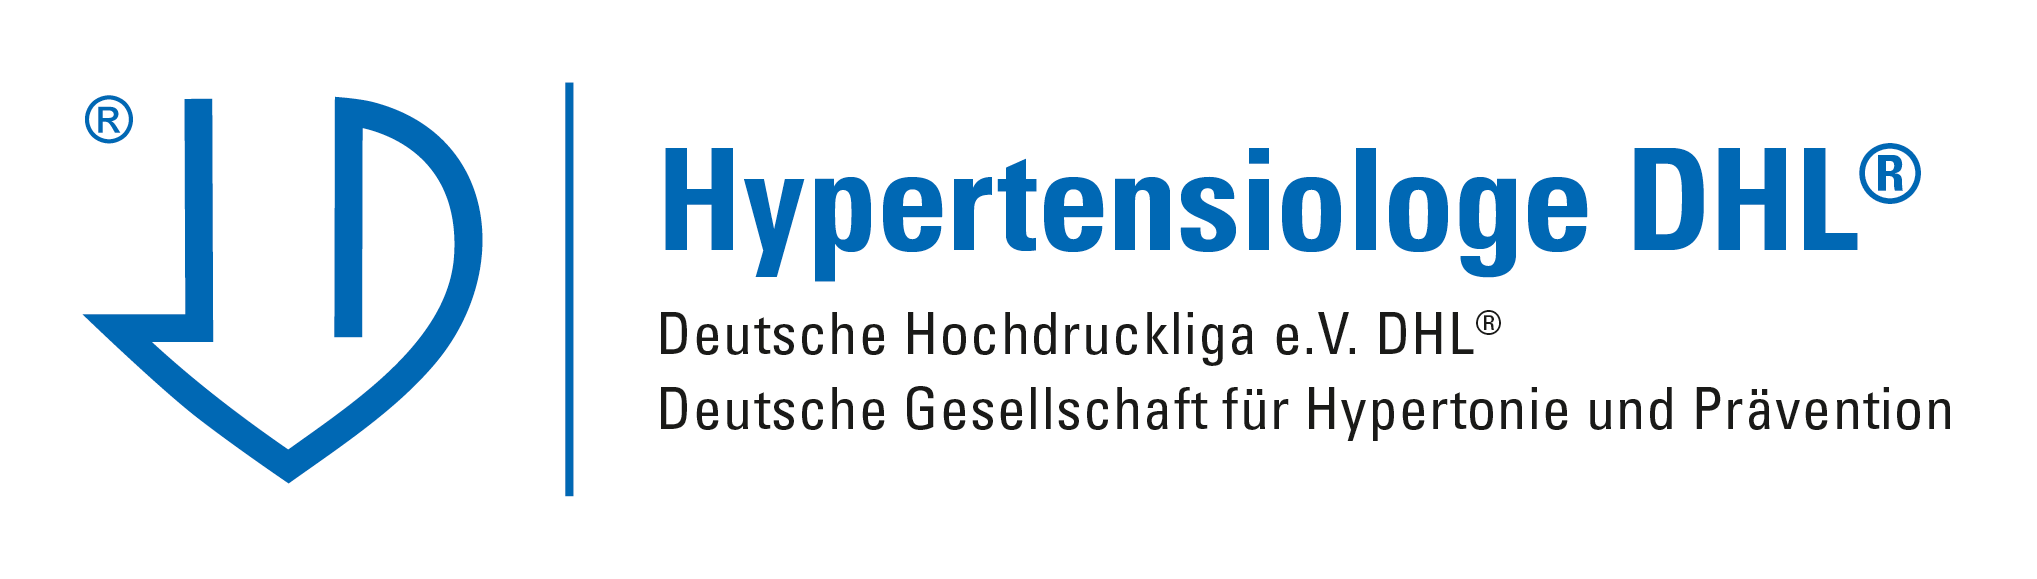 Hypertensiologe DHL